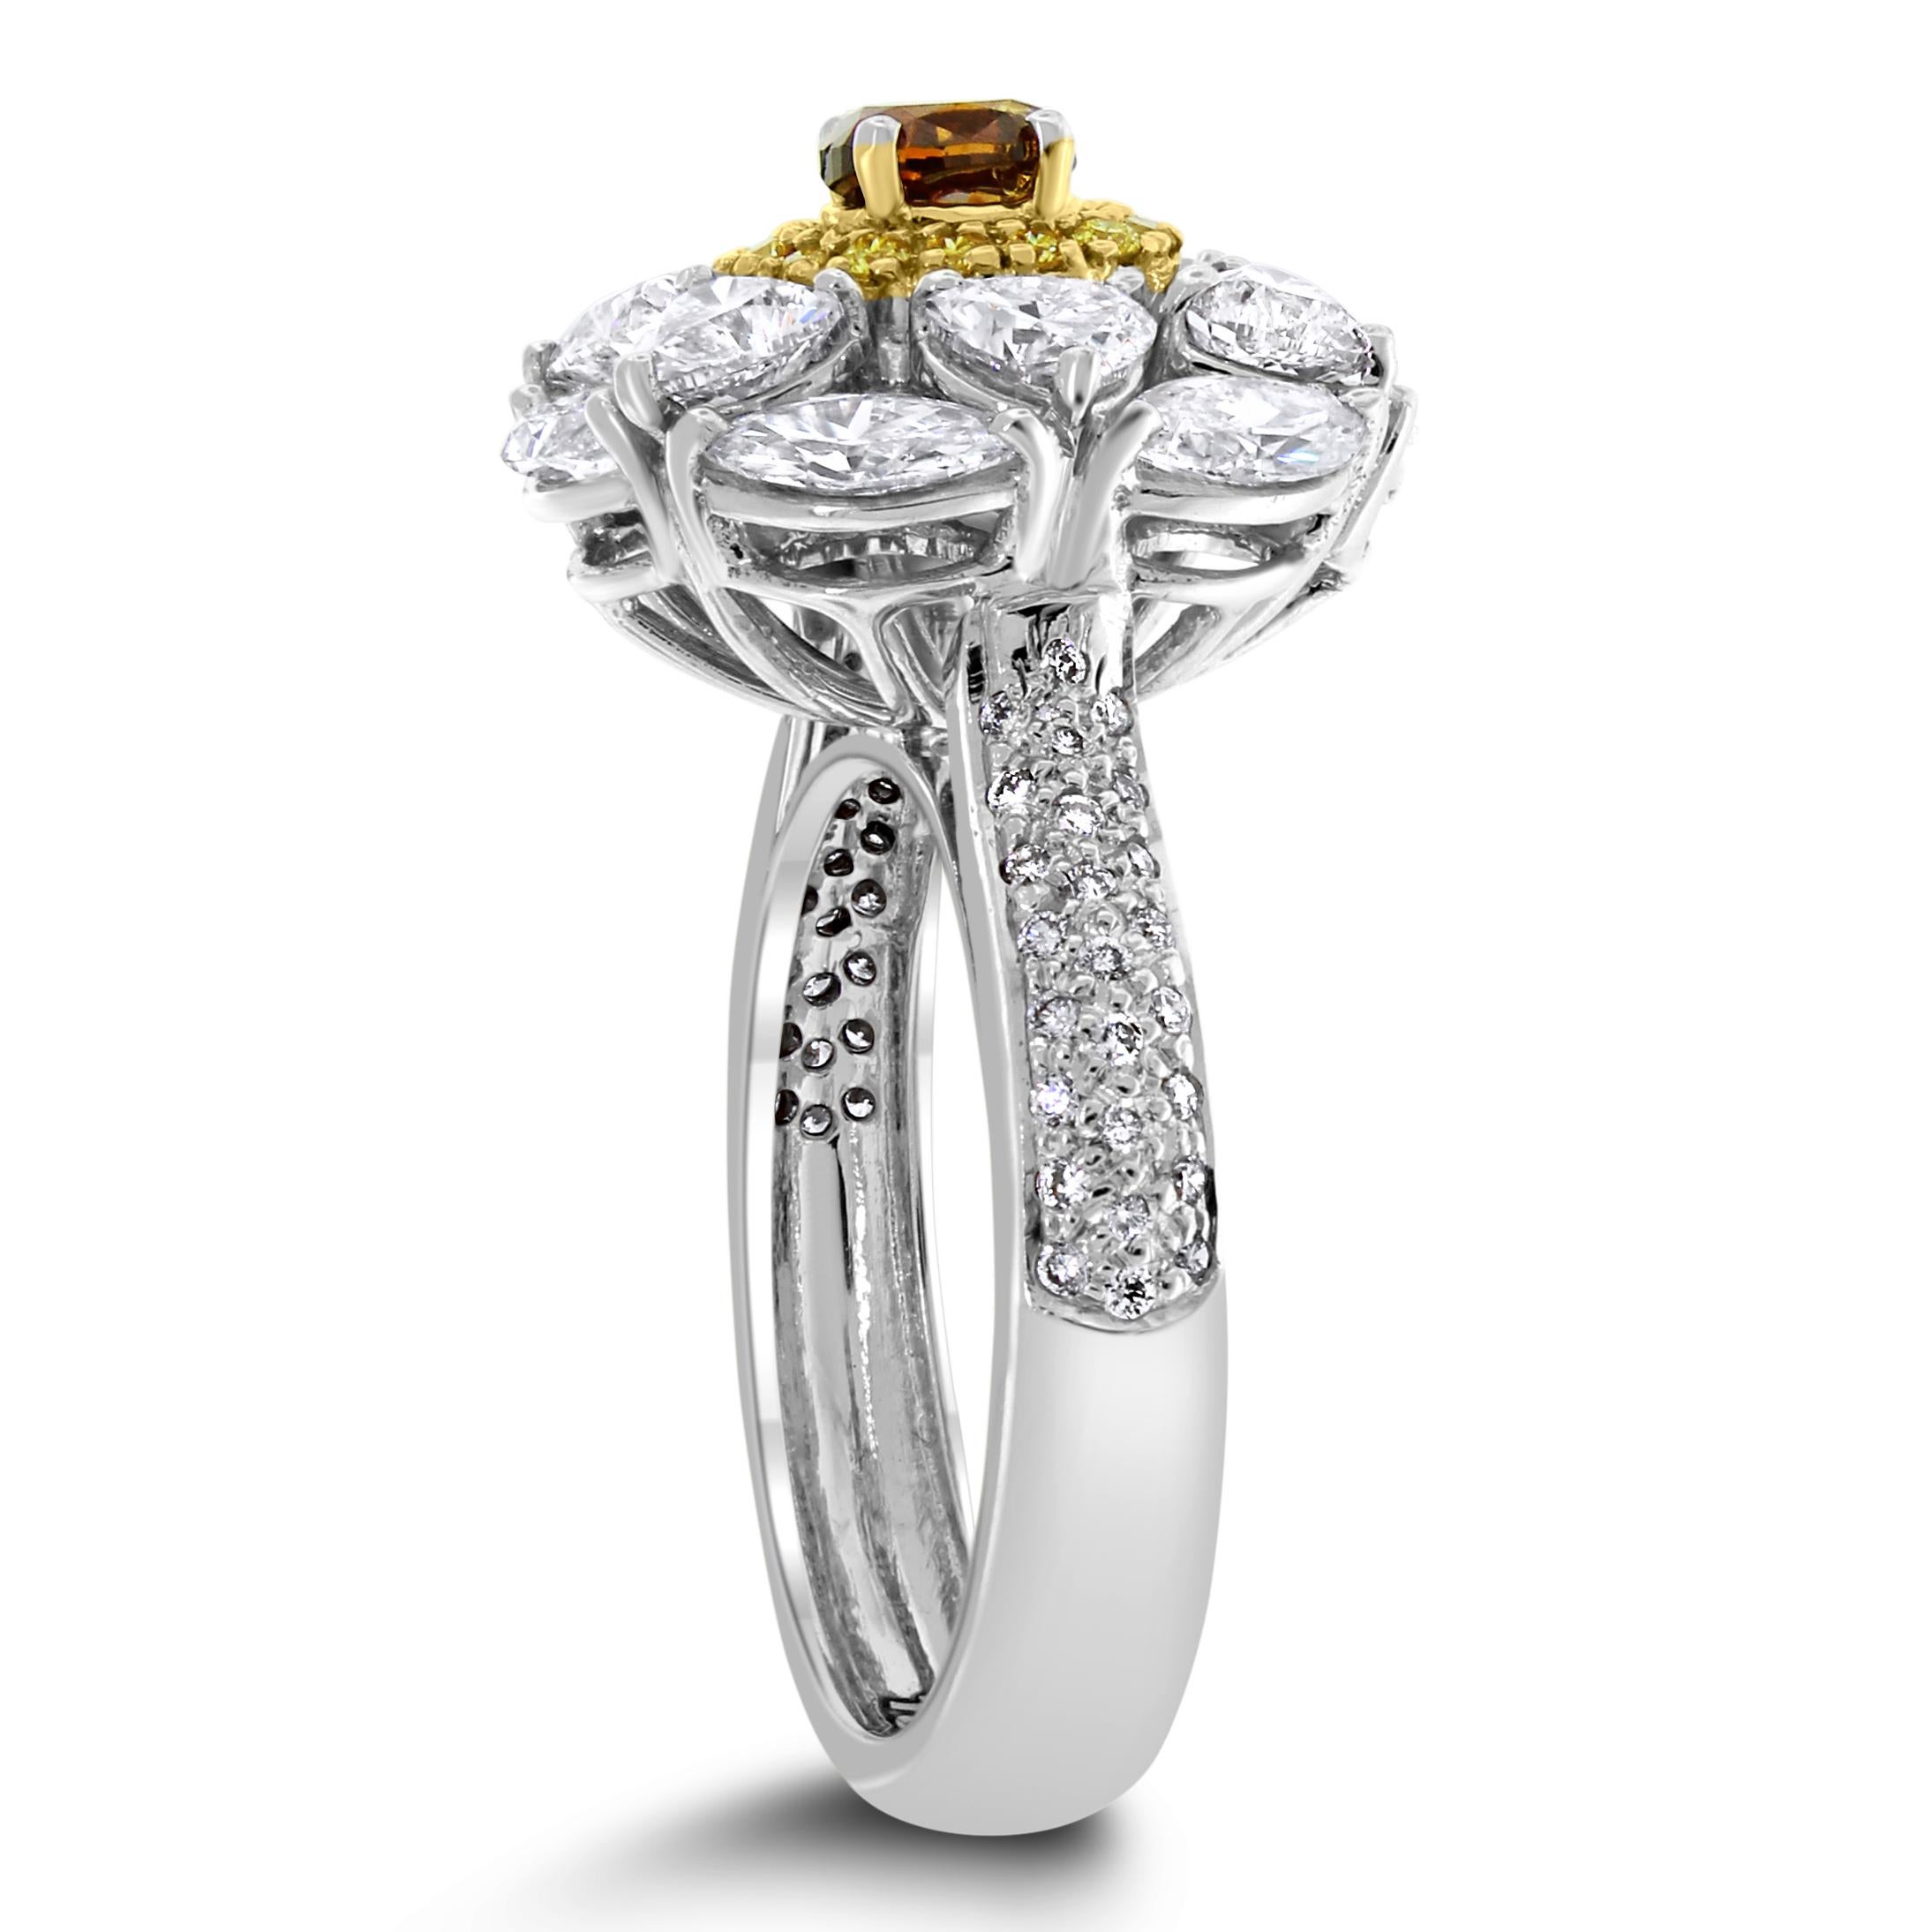 Der Ballerina Champagne ist ein klassischer Cocktail-Diamantring, der die elegantesten Formen und Farben von Diamanten vereint

Form des zentralen Diamanten: Oval
Gewicht des zentralen Diamanten: 0,32 ct 
Farbe des Diamanten: Orangy Brown
Diamant